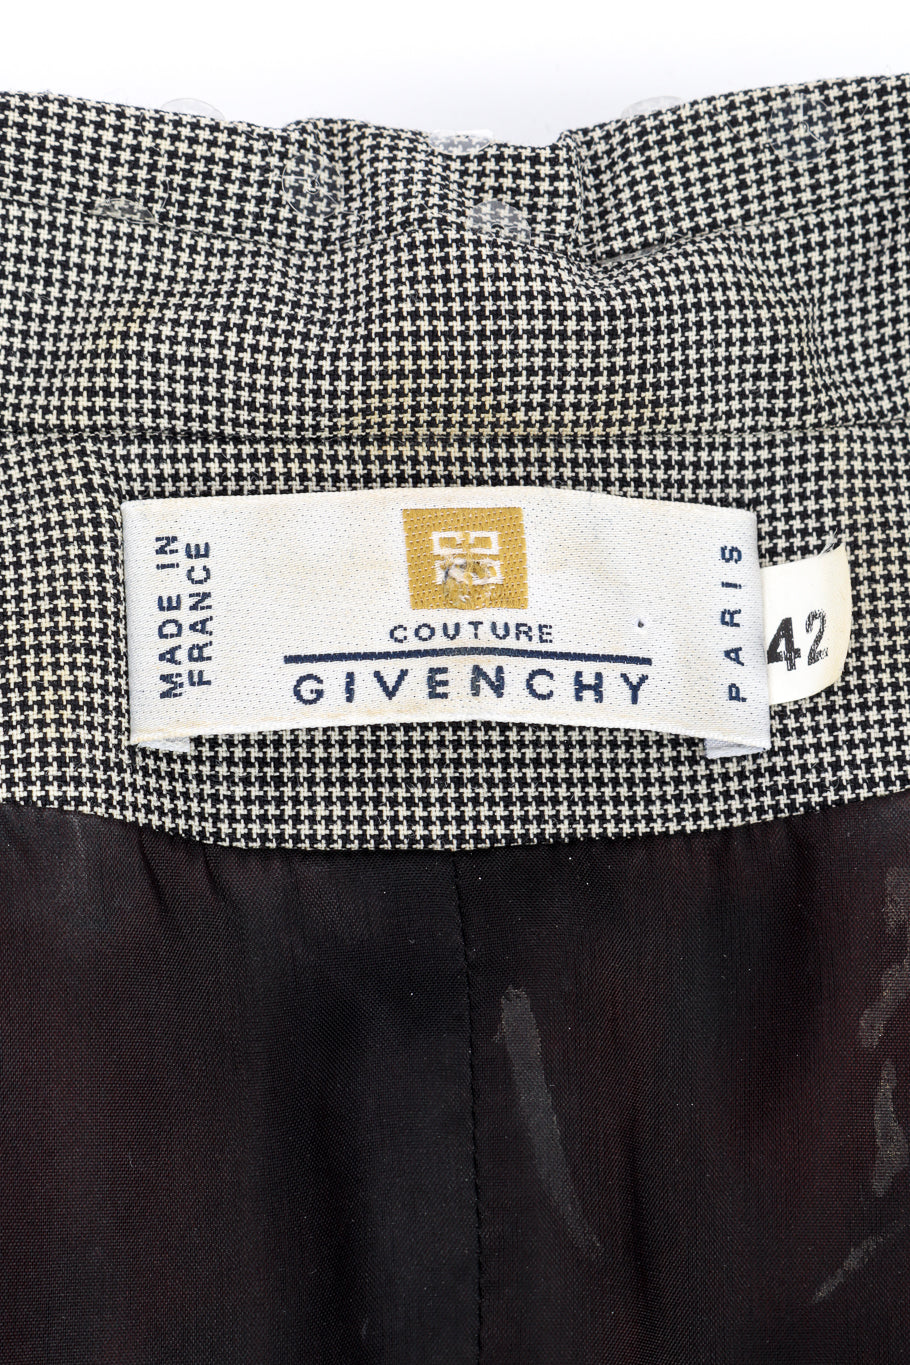 Vintage Givenchy Plaid Sequin Dress signature label @recessla